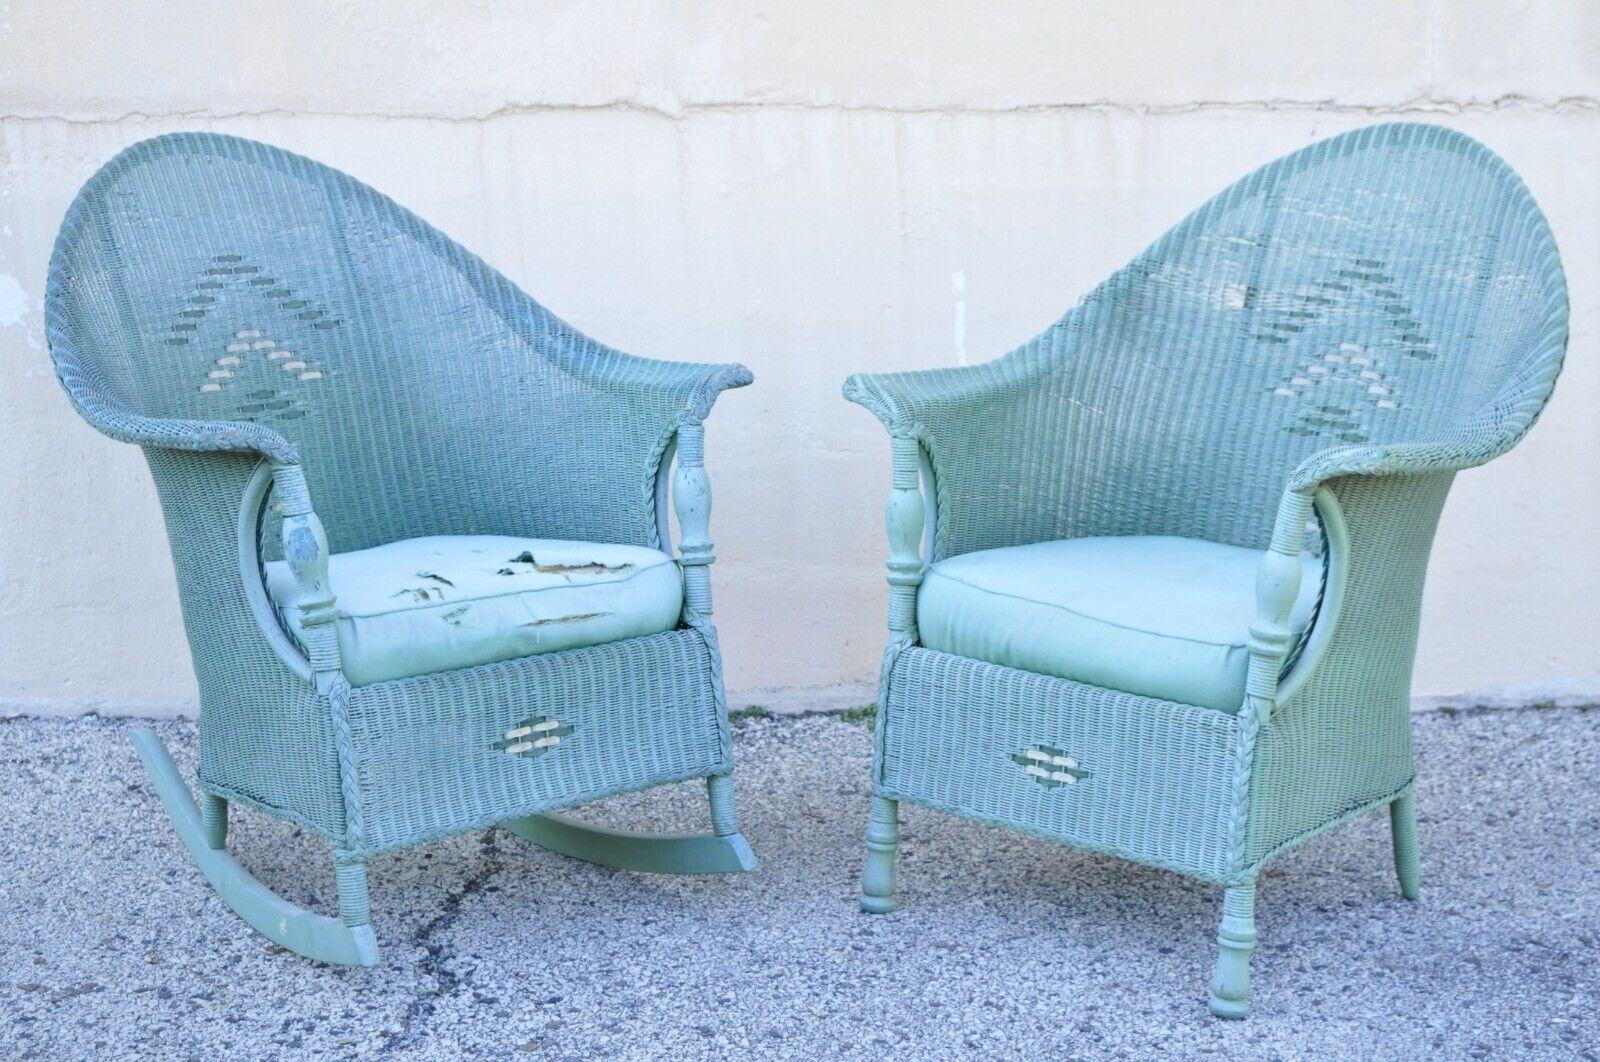 Ensemble de canapés de salon en osier tressé, bleu et vert, de style victorien, avec chaise à bascule et chaise longue - 3 pièces. L'article comprend (1) canapé, (1) chaise longue, (1) chaise à bascule, design 